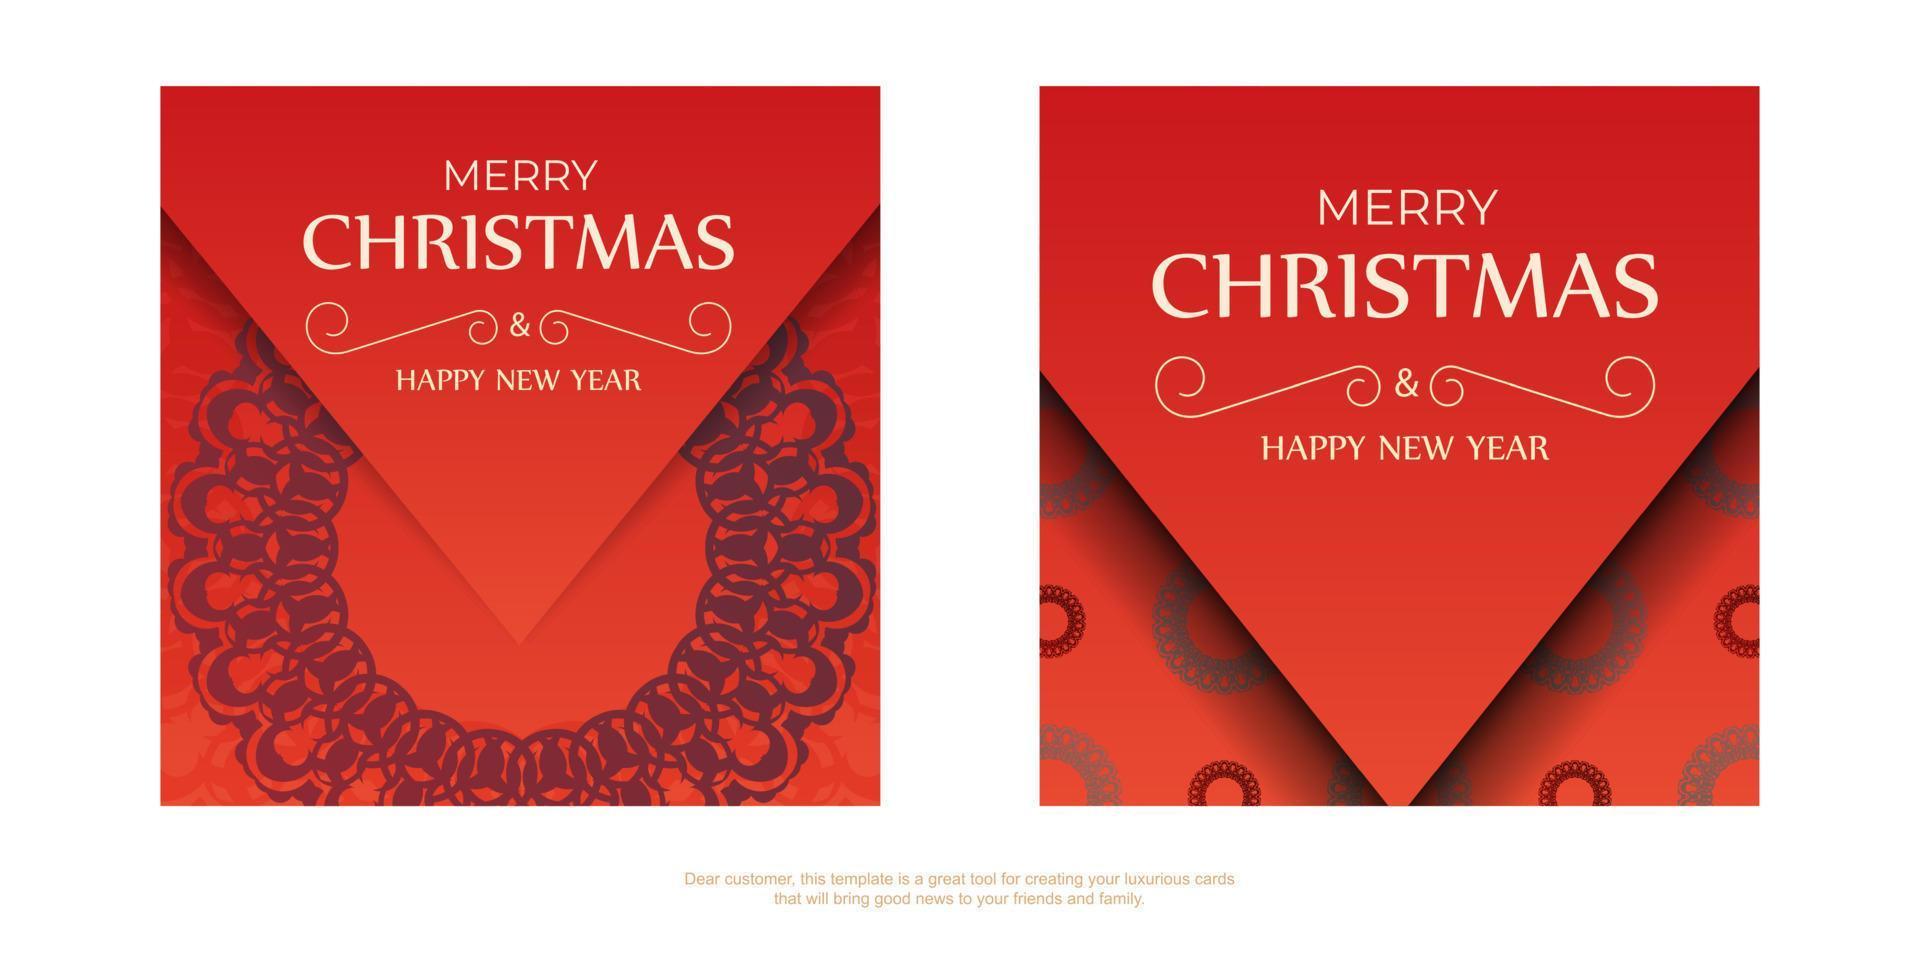 cartão de férias feliz ano novo cor vermelha com ornamento de inverno borgonha vetor